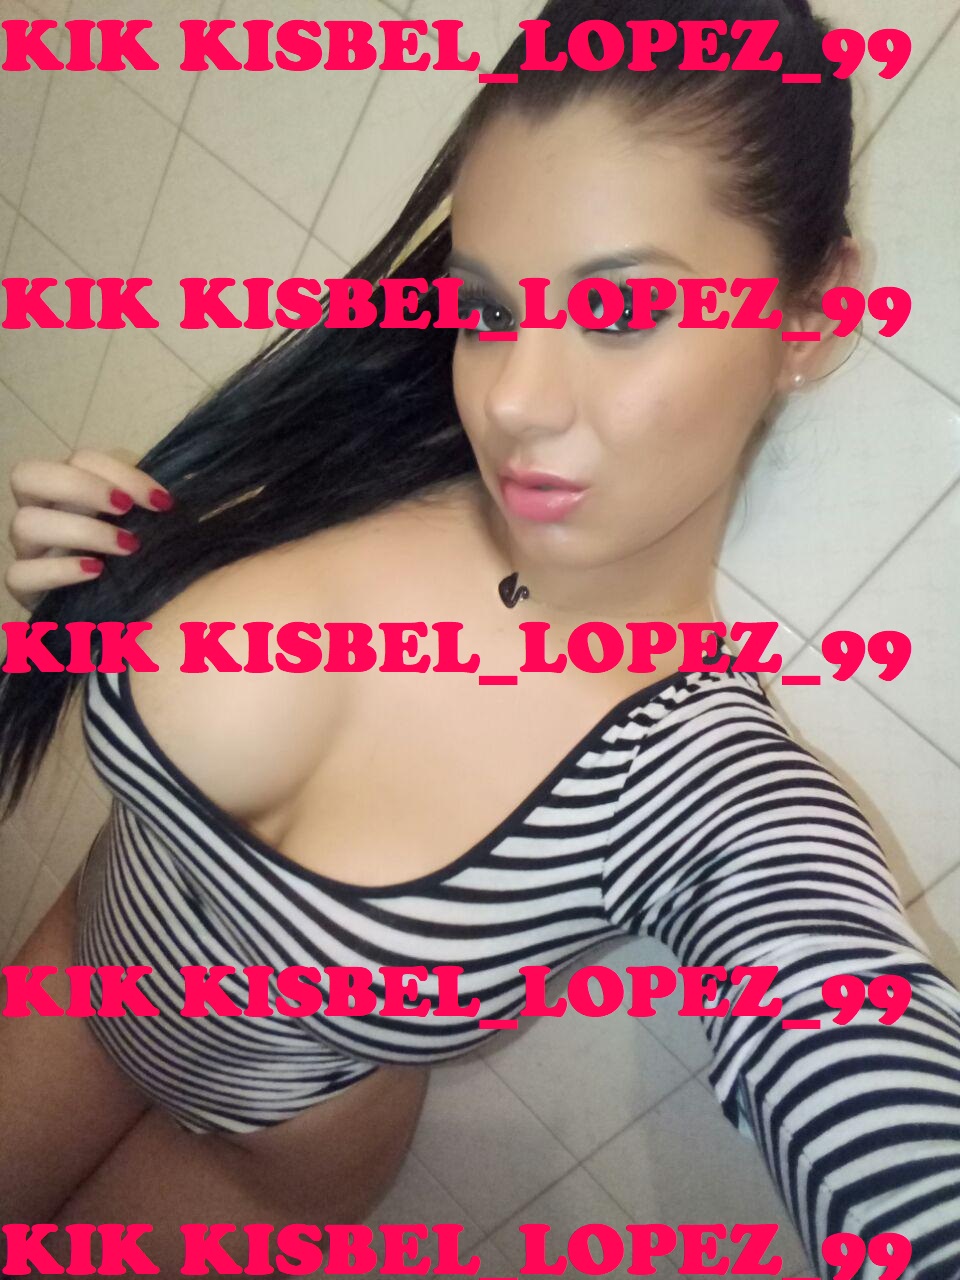 [F] 21 KIK kisbel_lopez_99